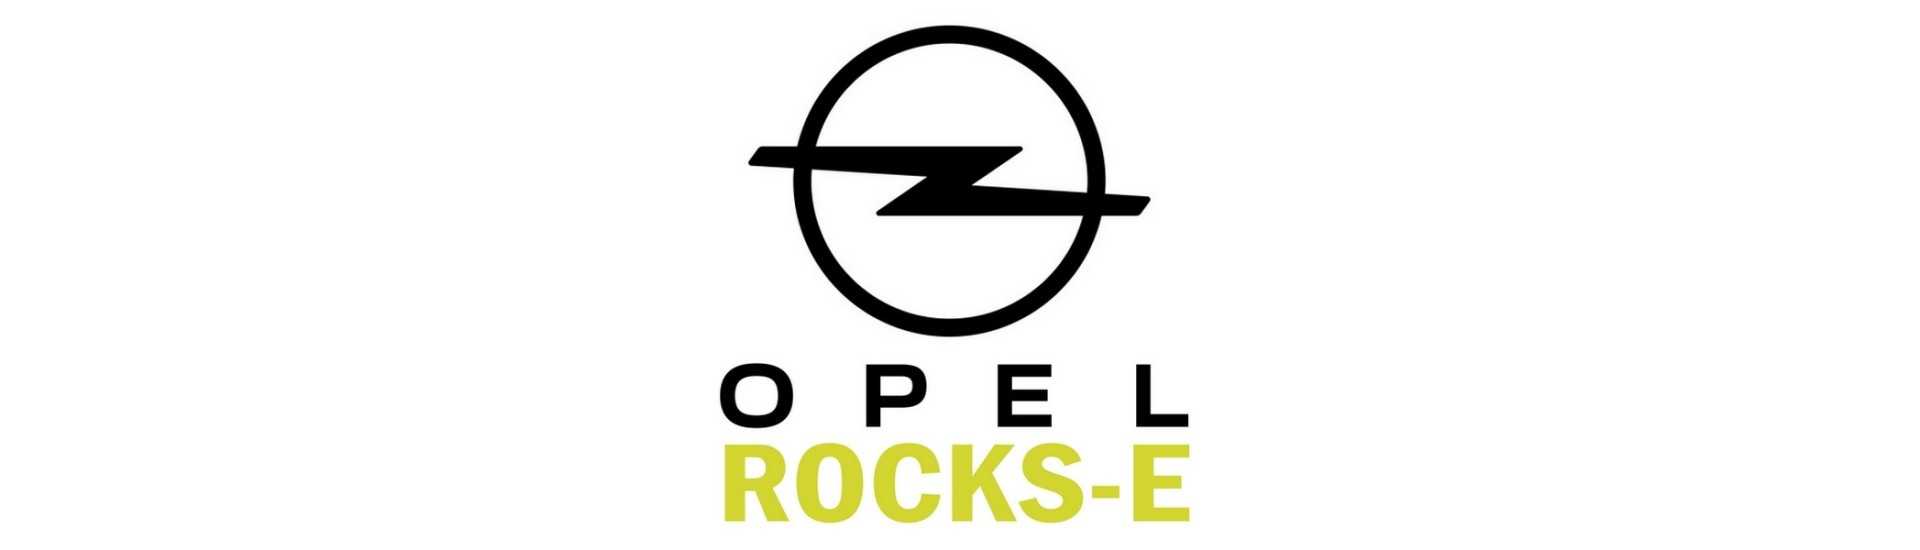 Crémaillère de direction pour voiture sans permis Opel Rocks-E